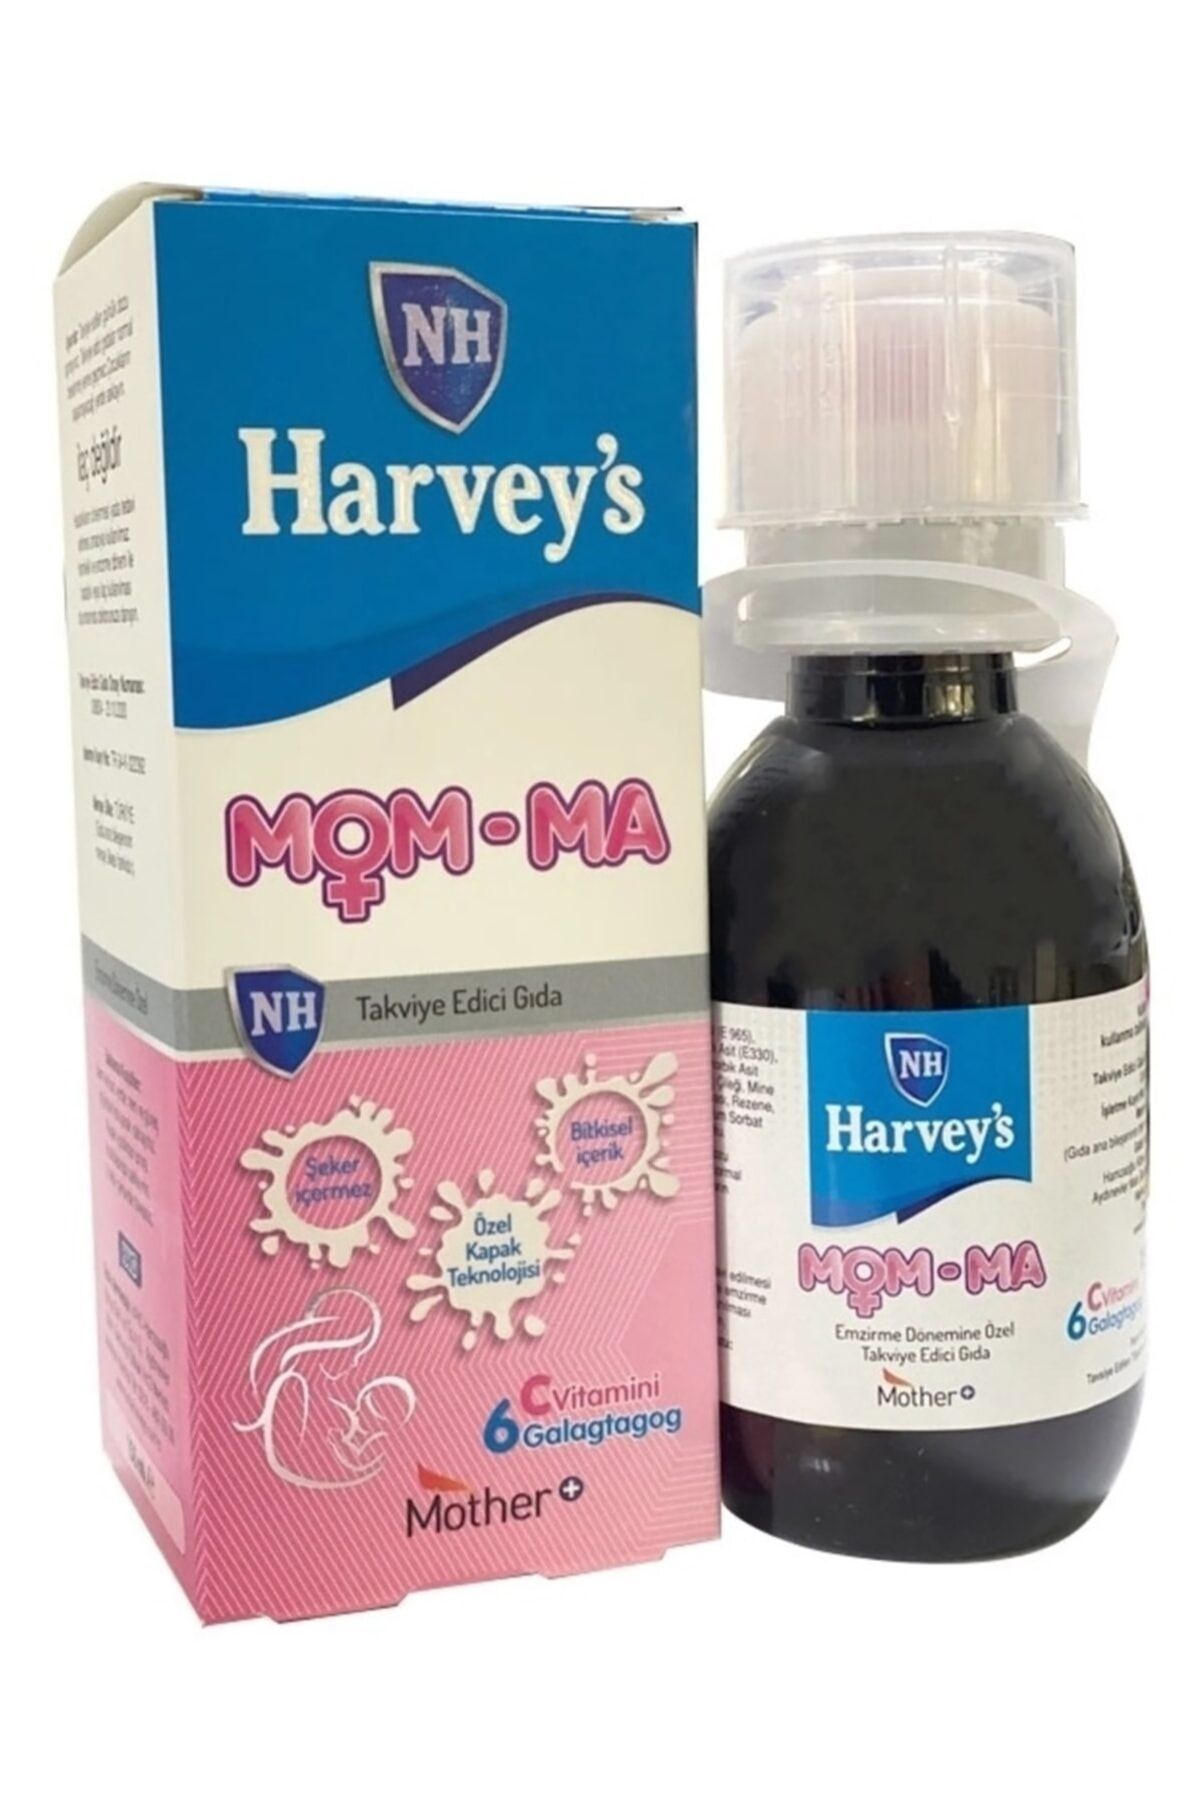 Nurse Harvey's Harvey’s Mom-ma Şurup Bitkisel Galaktogog, Ekstra C Vitamini Ve Sodyum Bikarbonat